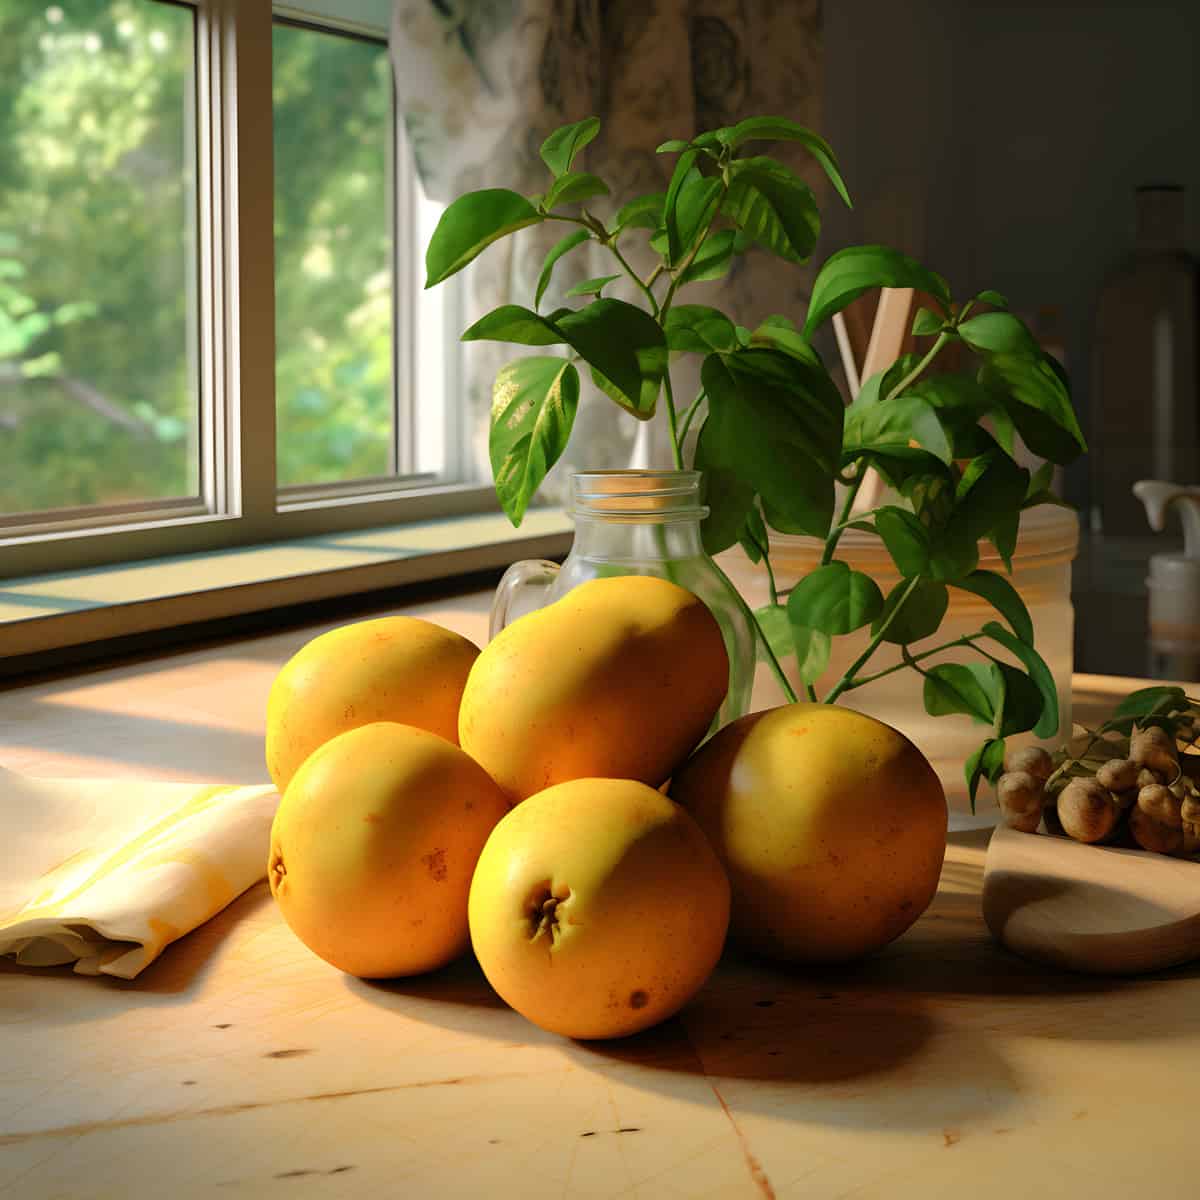 Mundu Fruit on a kitchen counter